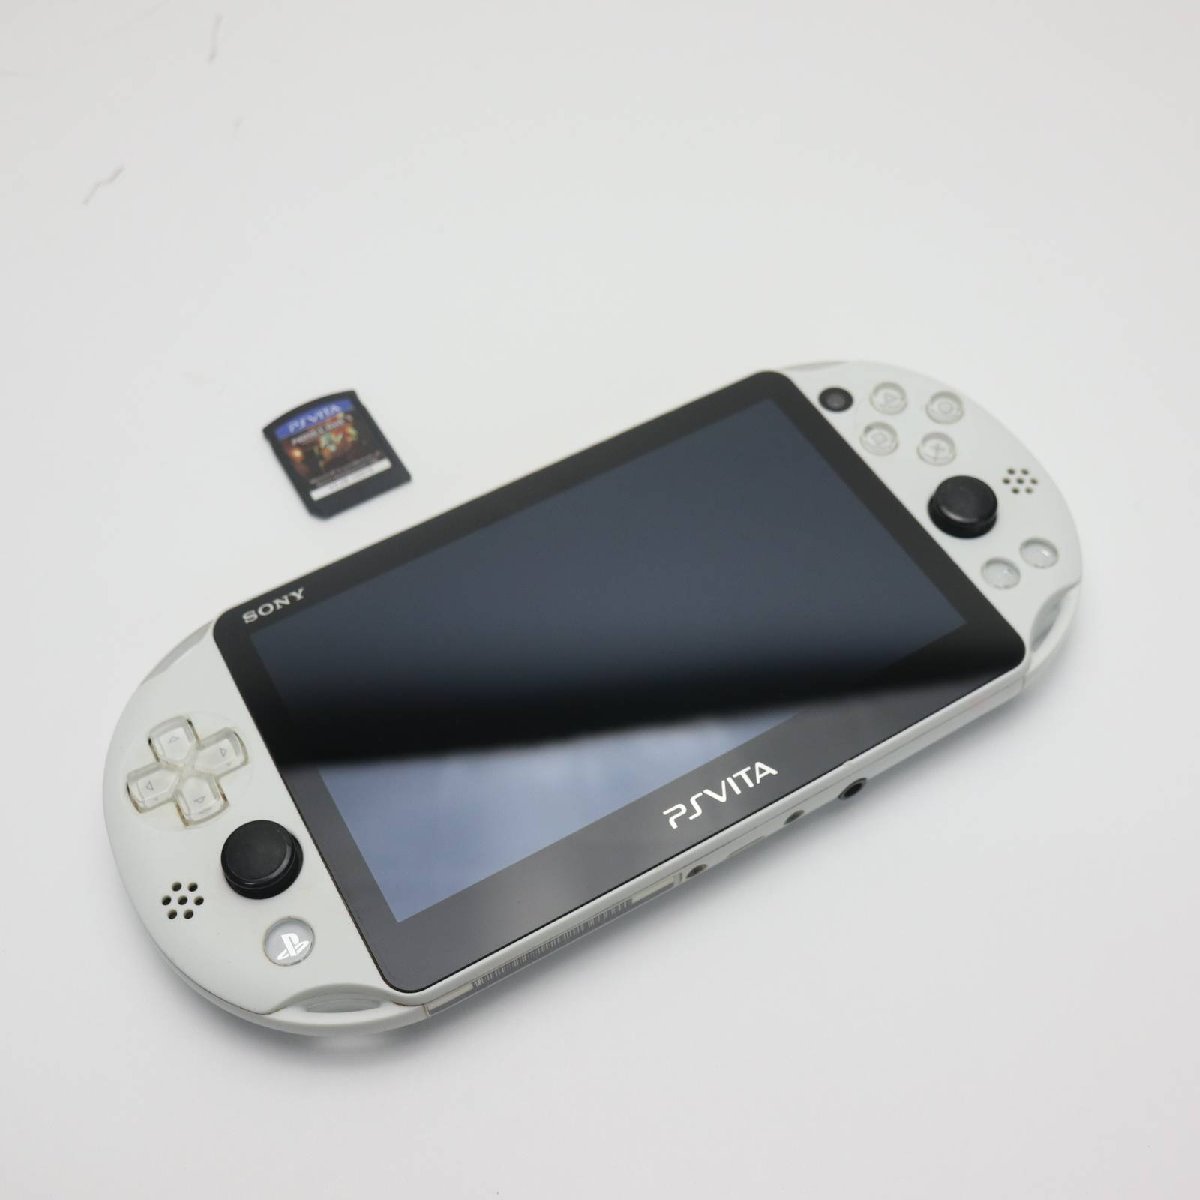 超美品 PCH-2000 PS VITA ホワイト 即日発送 game SONY PlayStation